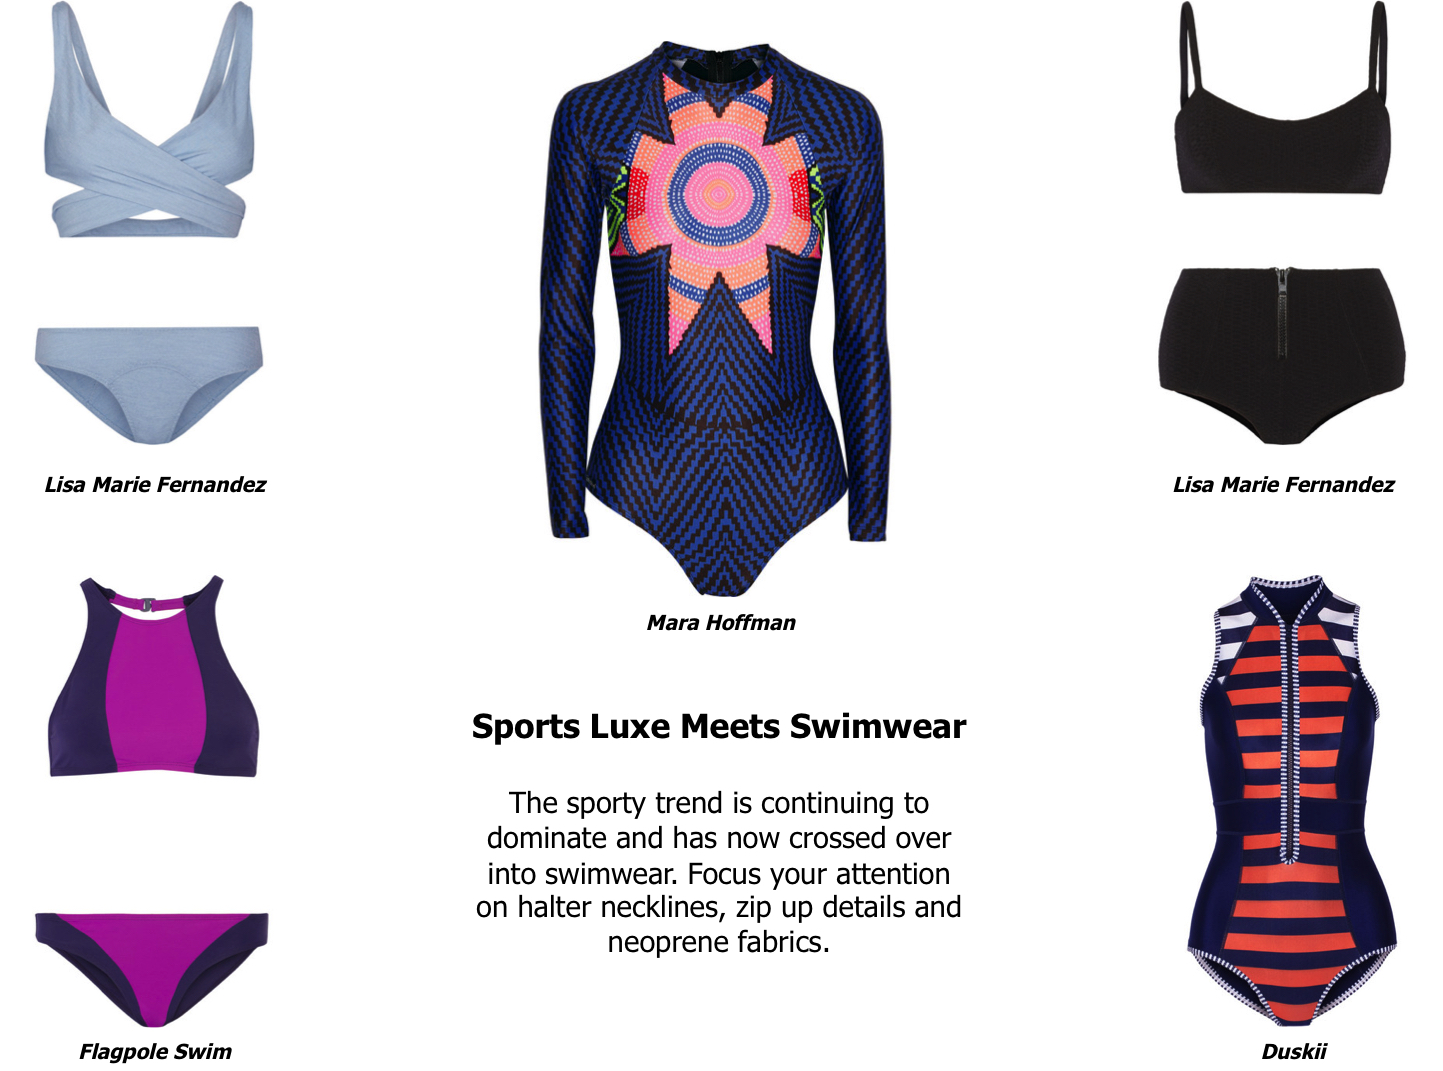 Sports Luxe Meets Swimwear - A&E Magazine